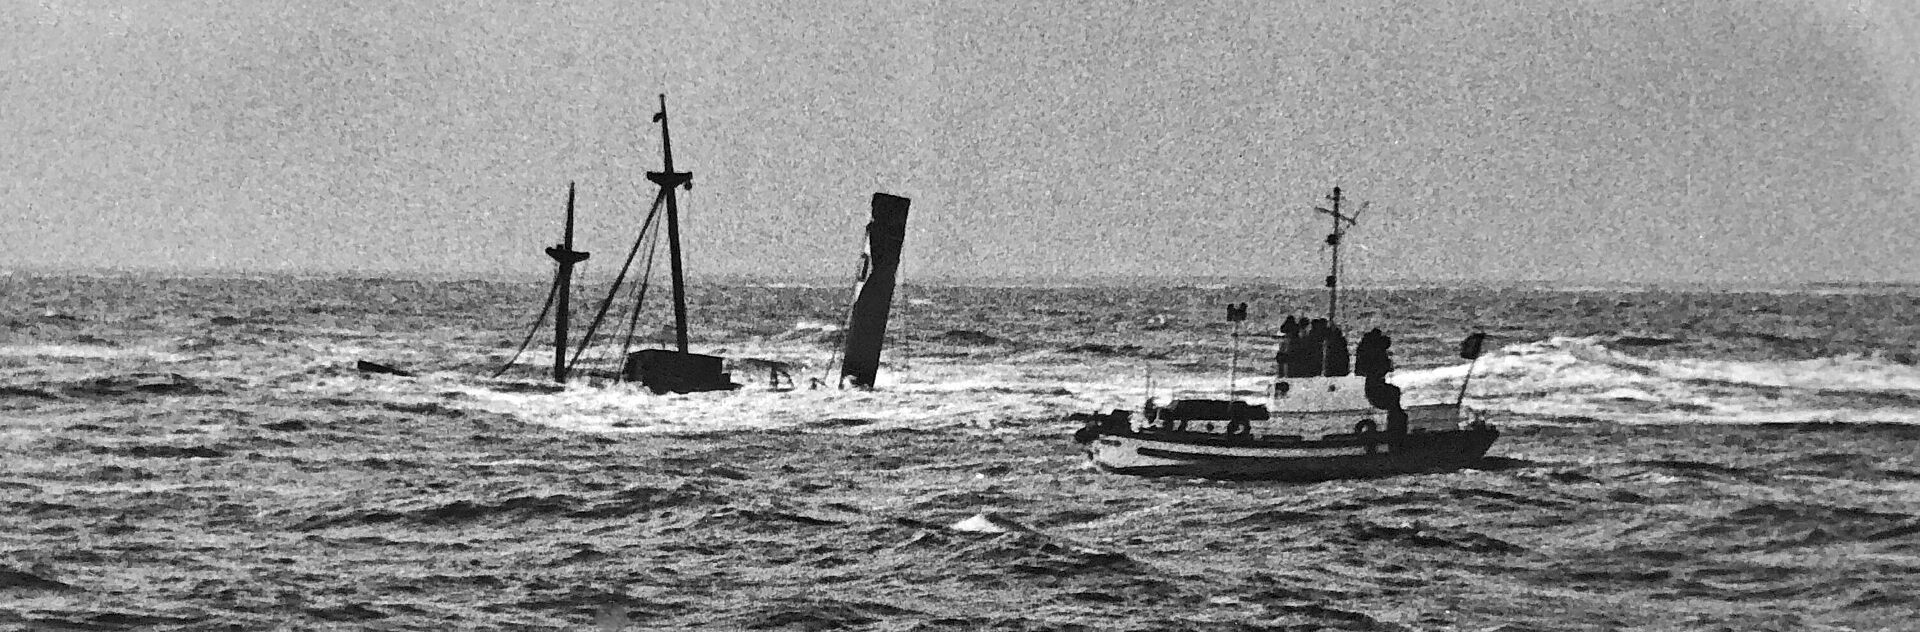 Schwarz-Weiß-Foto eines Motorrettungsbootes der Seenotretter an einem untergegangenen Dampfschiff